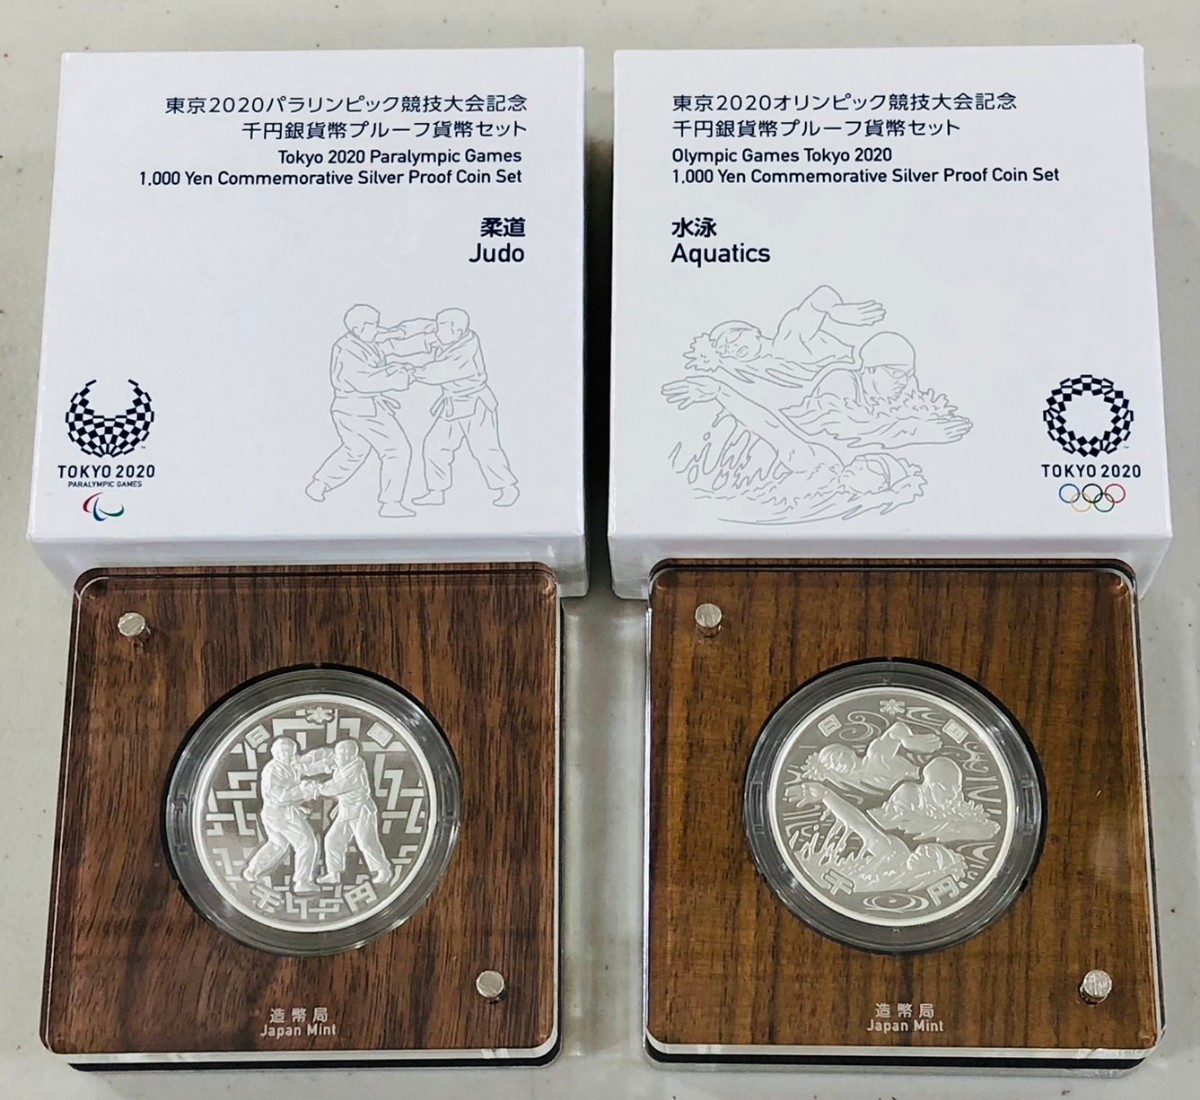 Yahoo!オークション -「東京2020パラリンピック記念千円銀貨」の落札